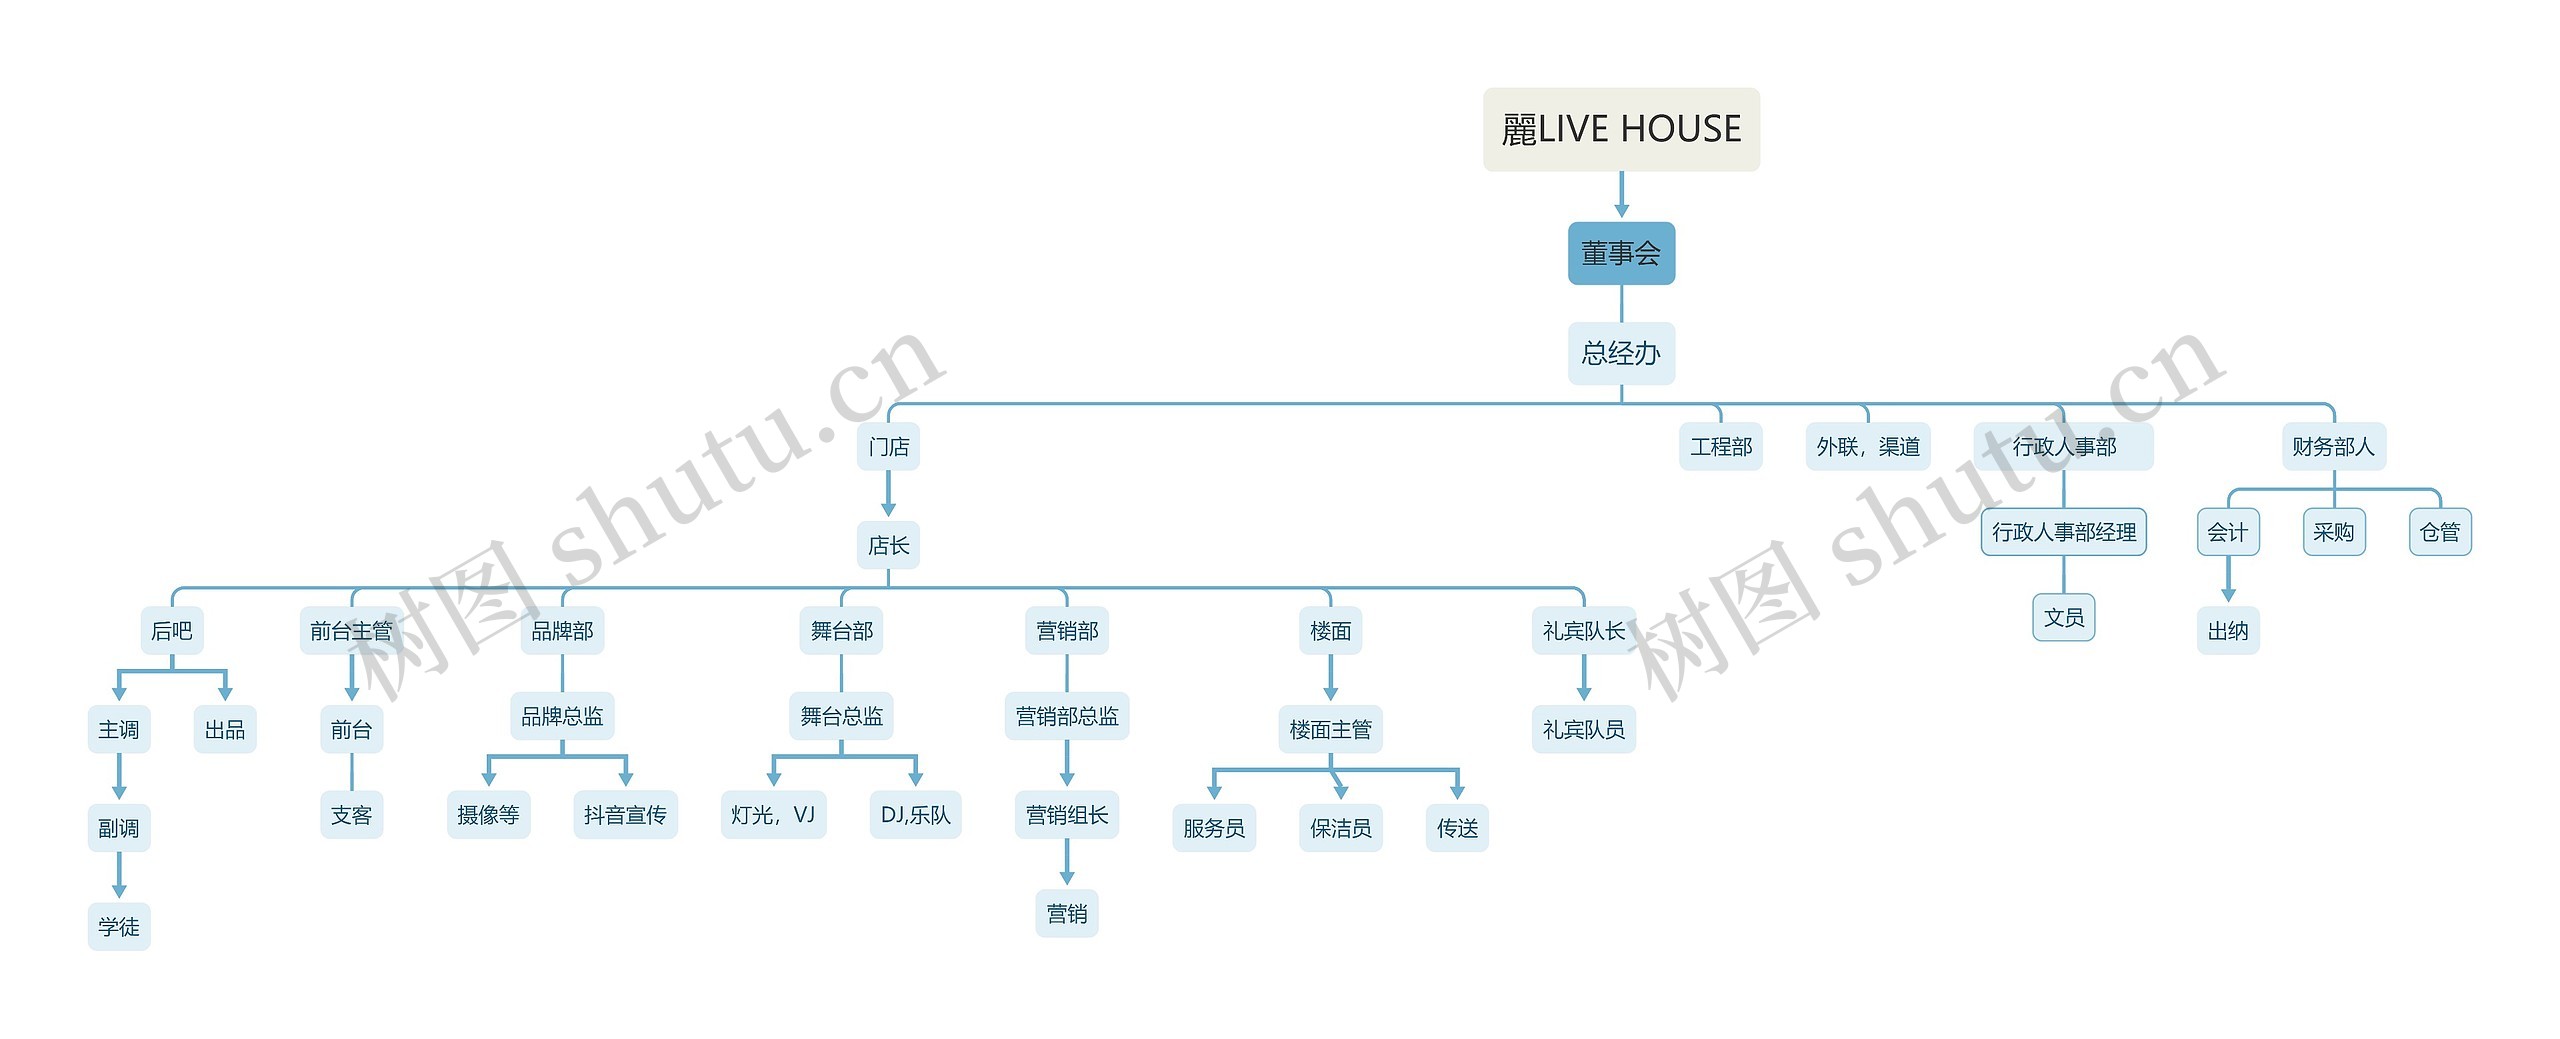 喷嚏LIVE HOUSE组织架构思维导图